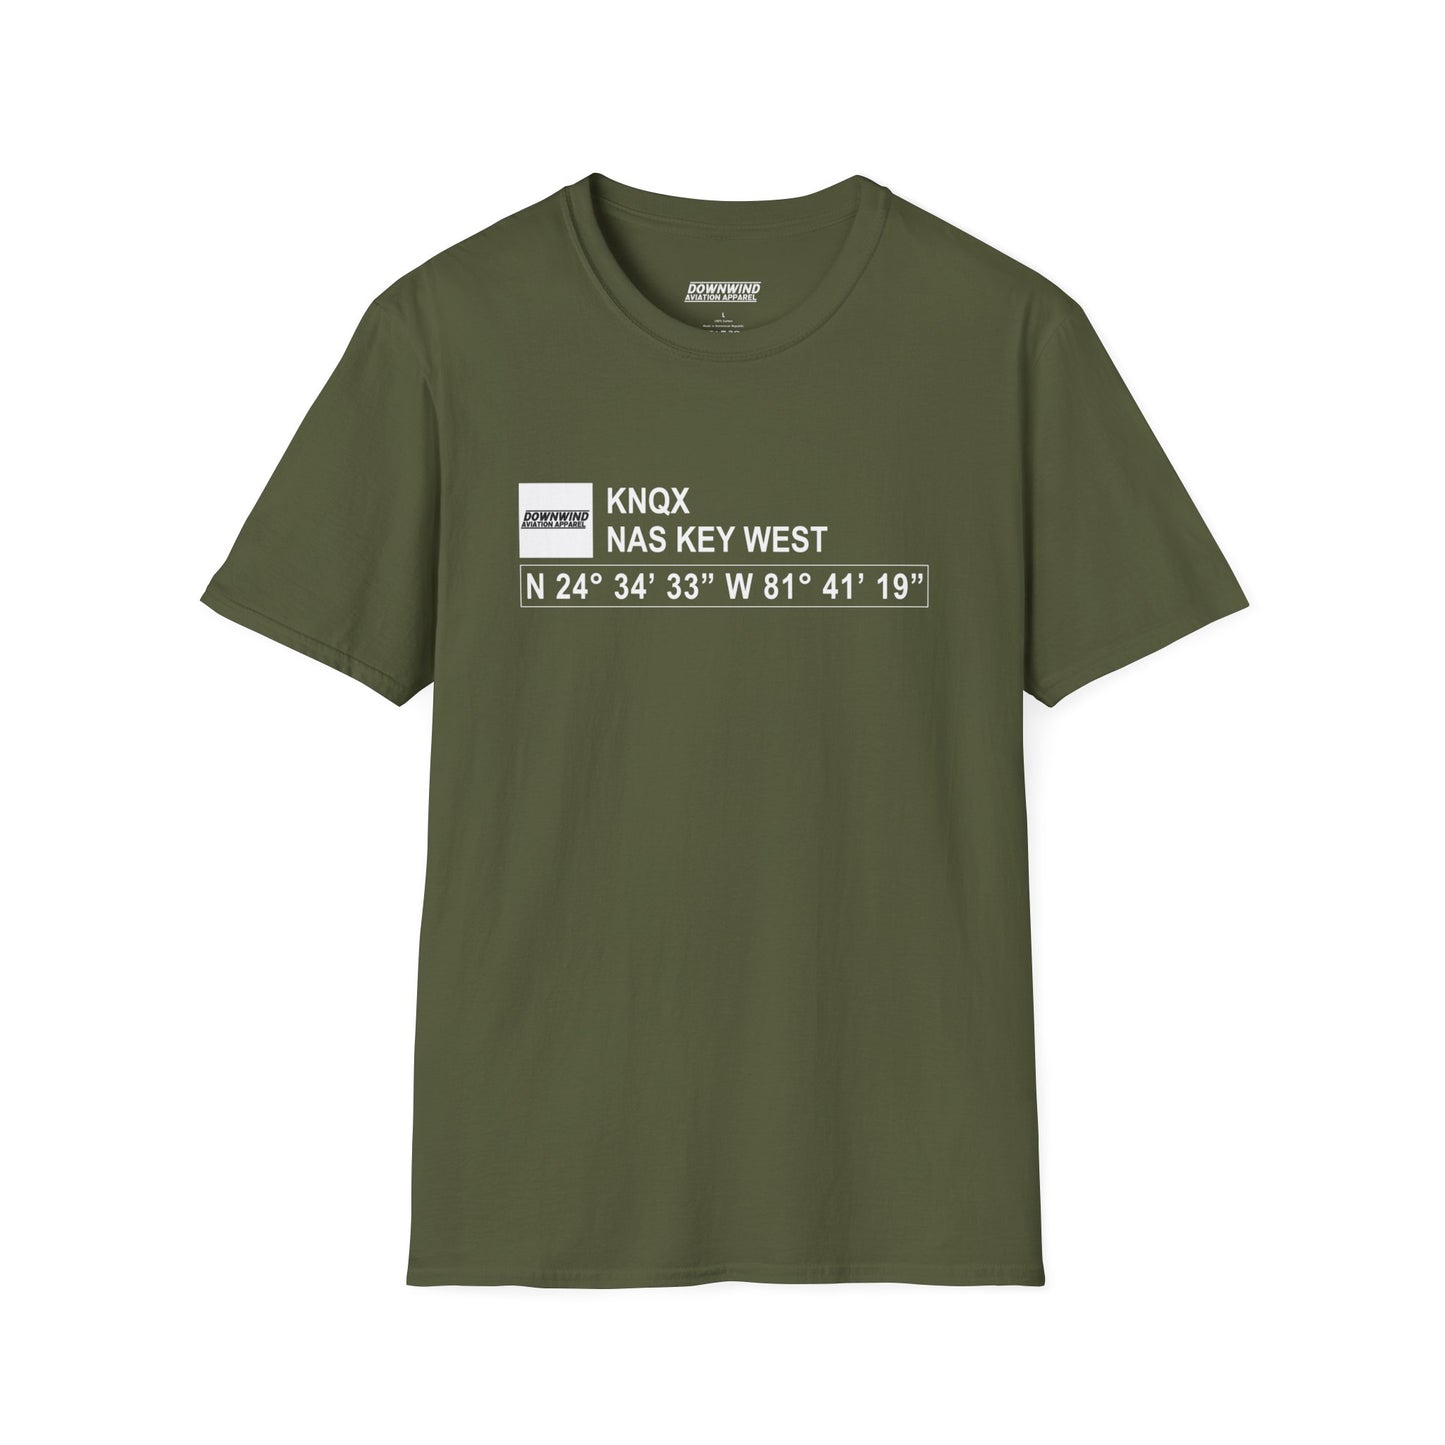 KNQX / NAS Key West T-Shirt